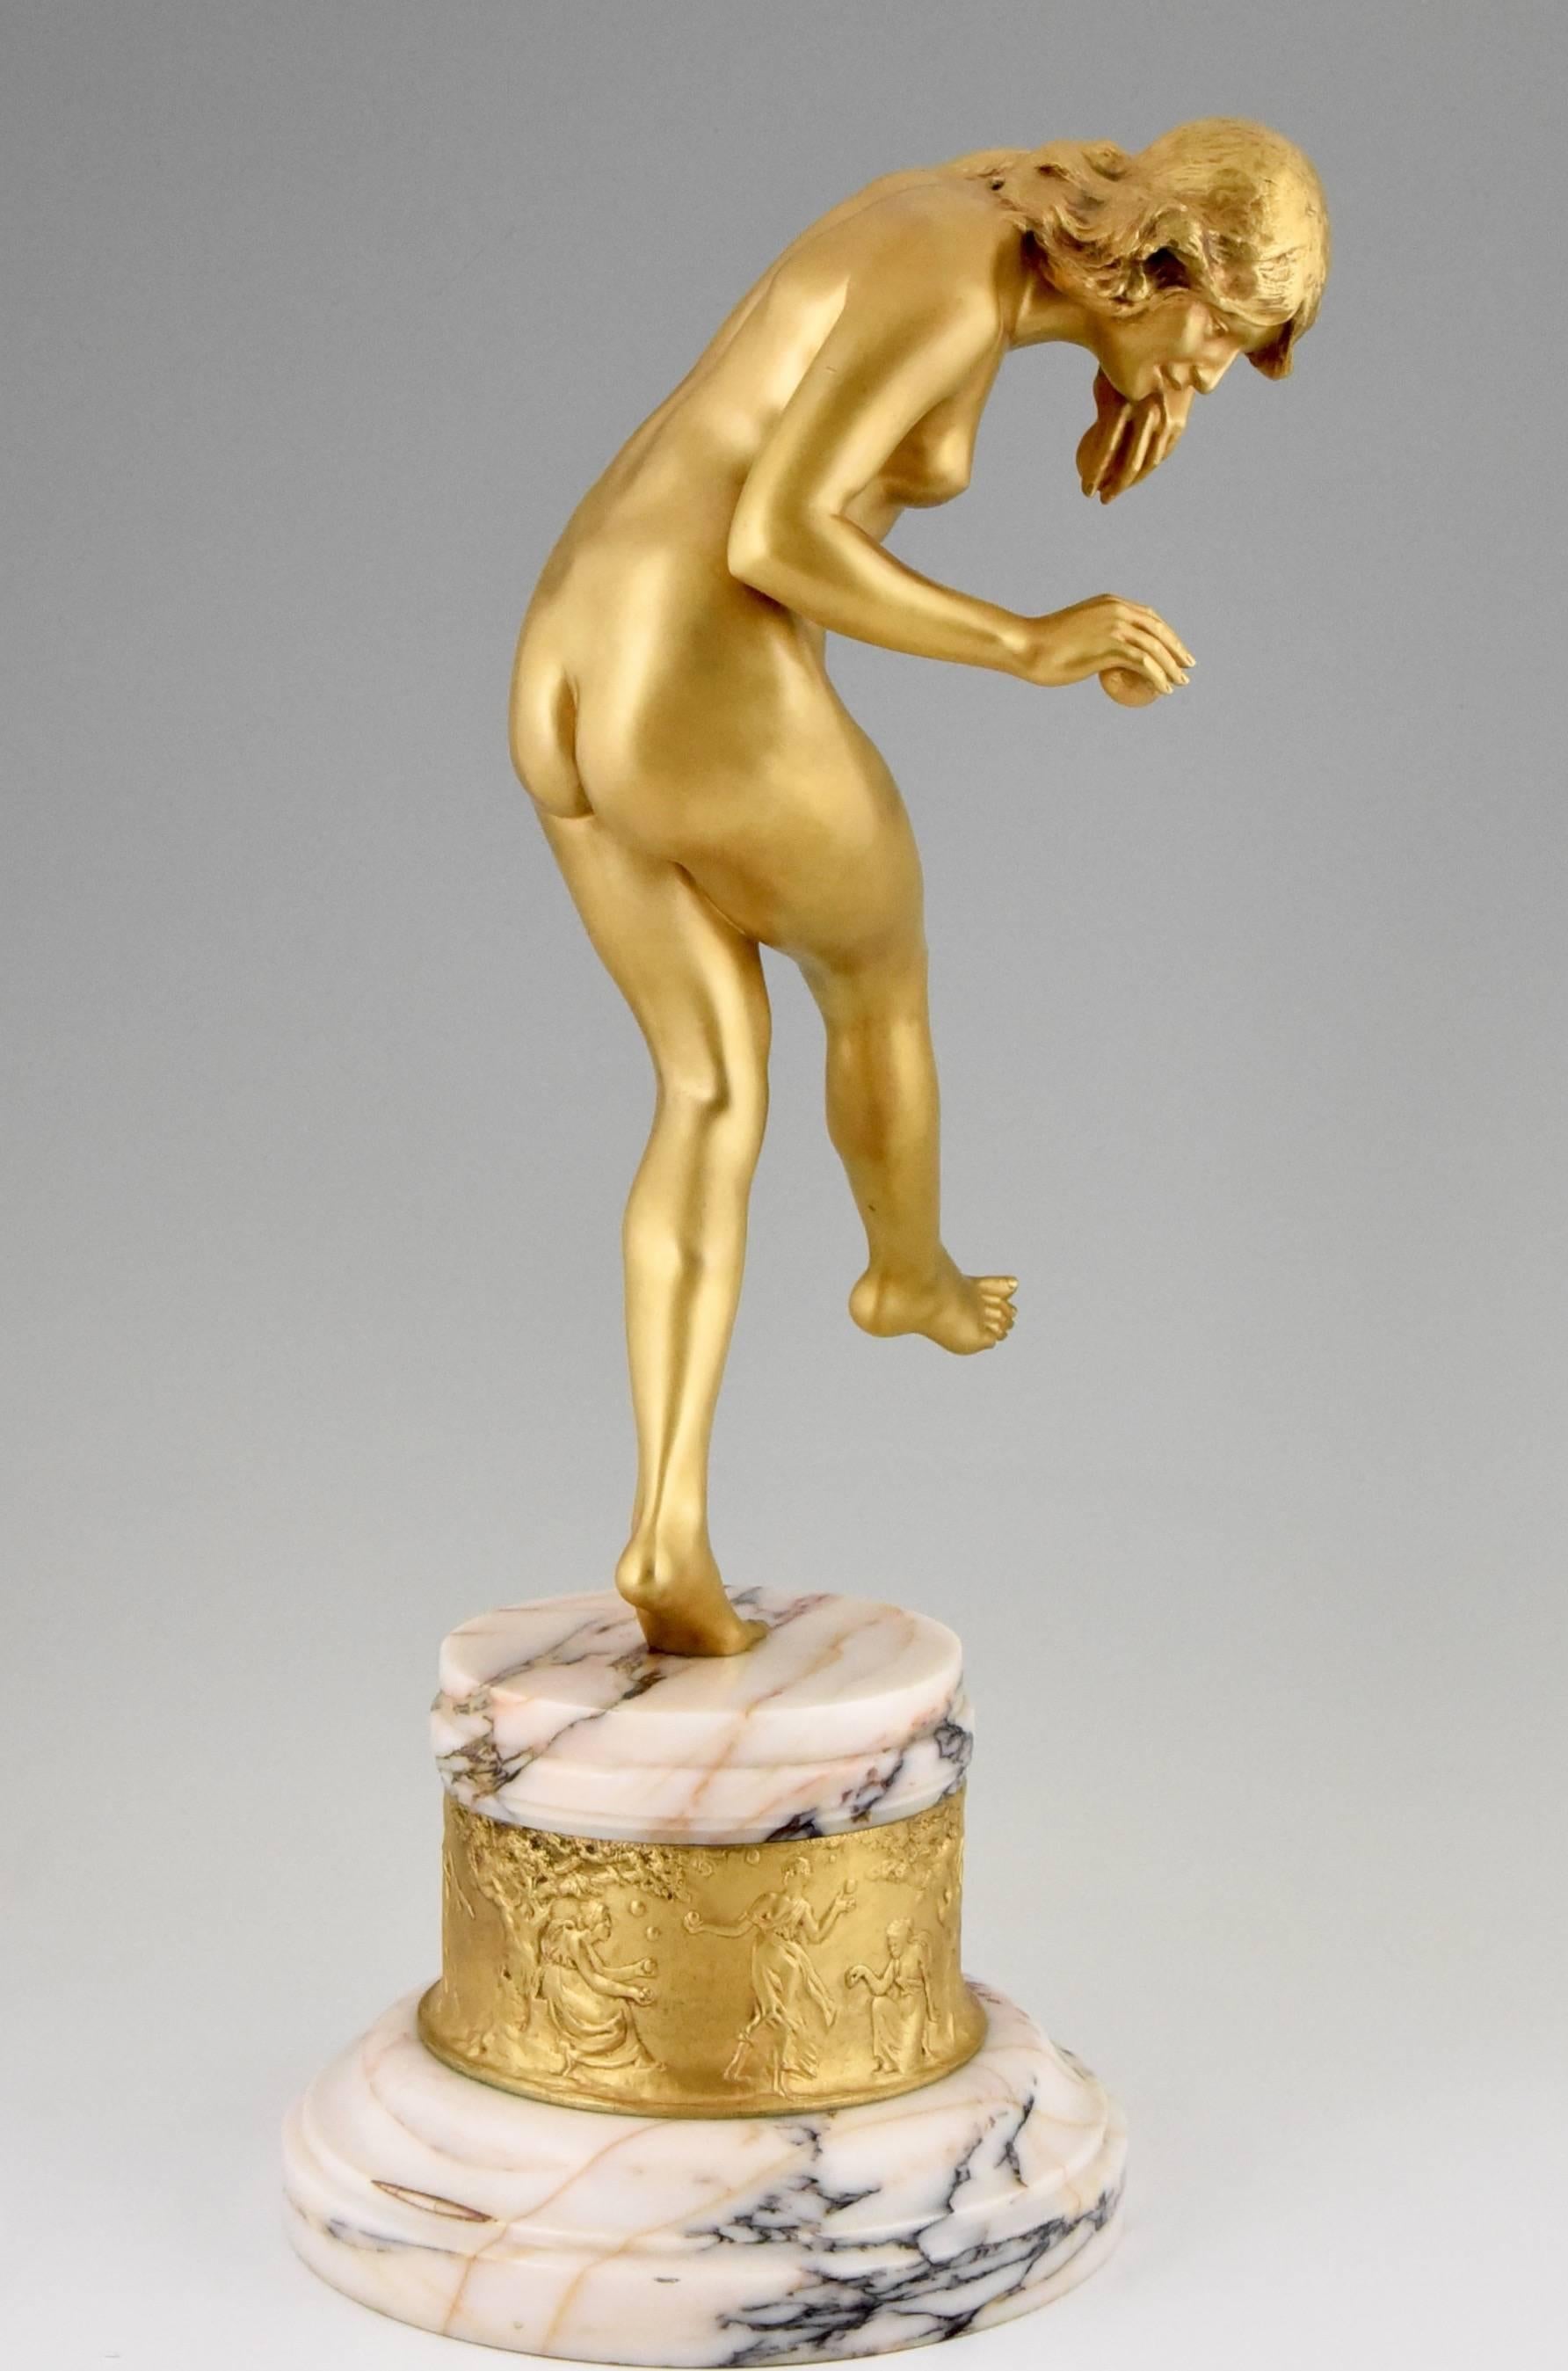 20th Century French Art Nouveau bronze sculpture nude dancer by Louis Marie Jules Delapchier